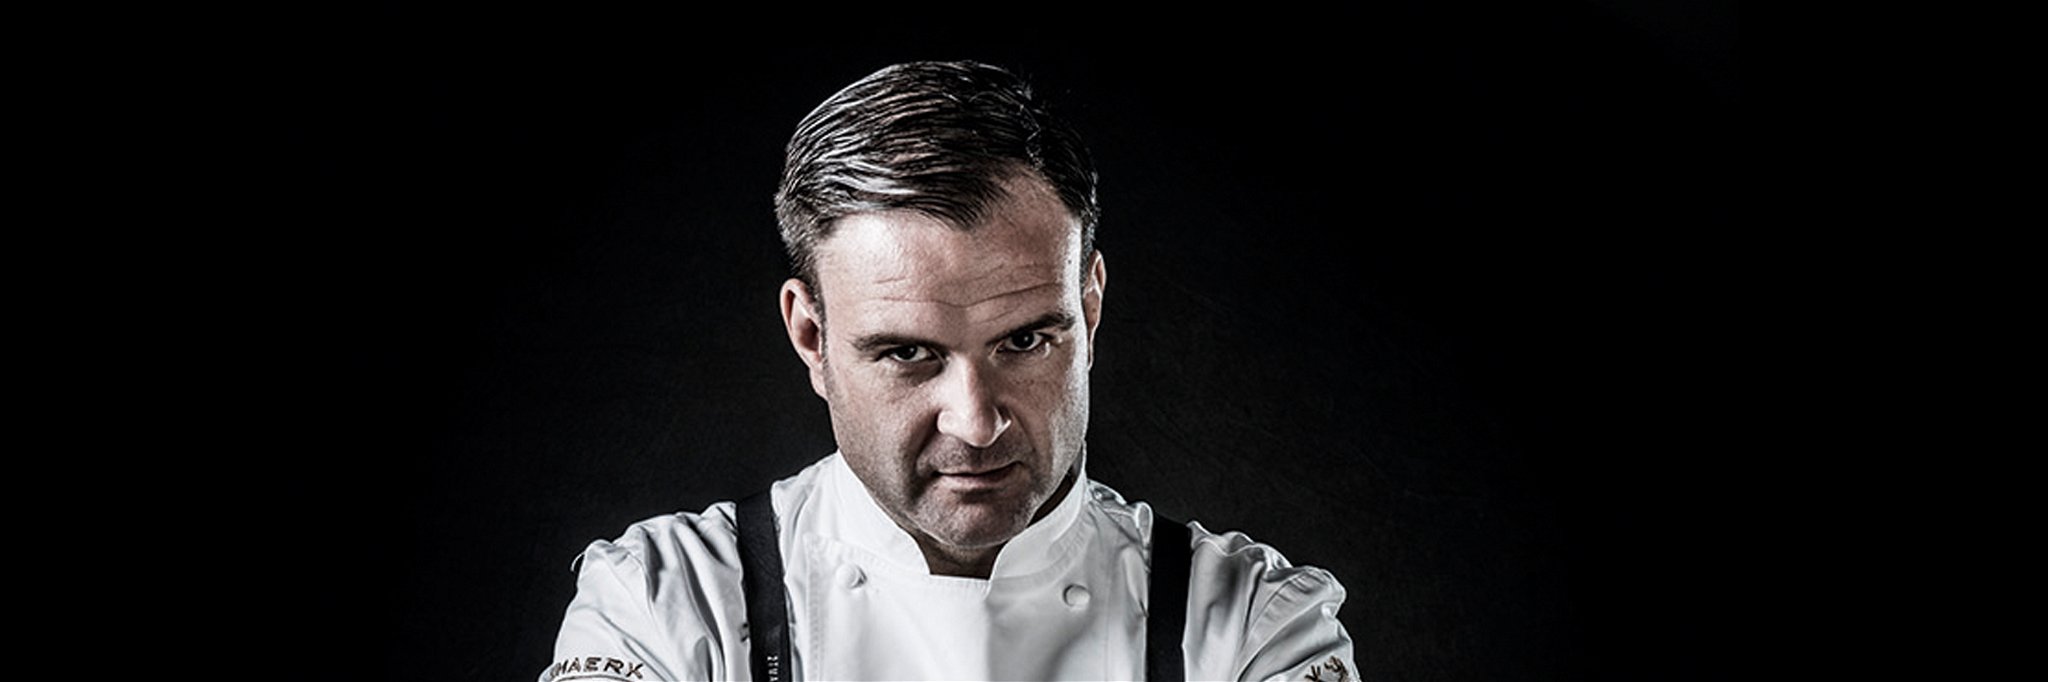 Oliver Scheiblauer ist ein mehrfach ausgezeichneter Koch und ist Vorbild für junge Talente.